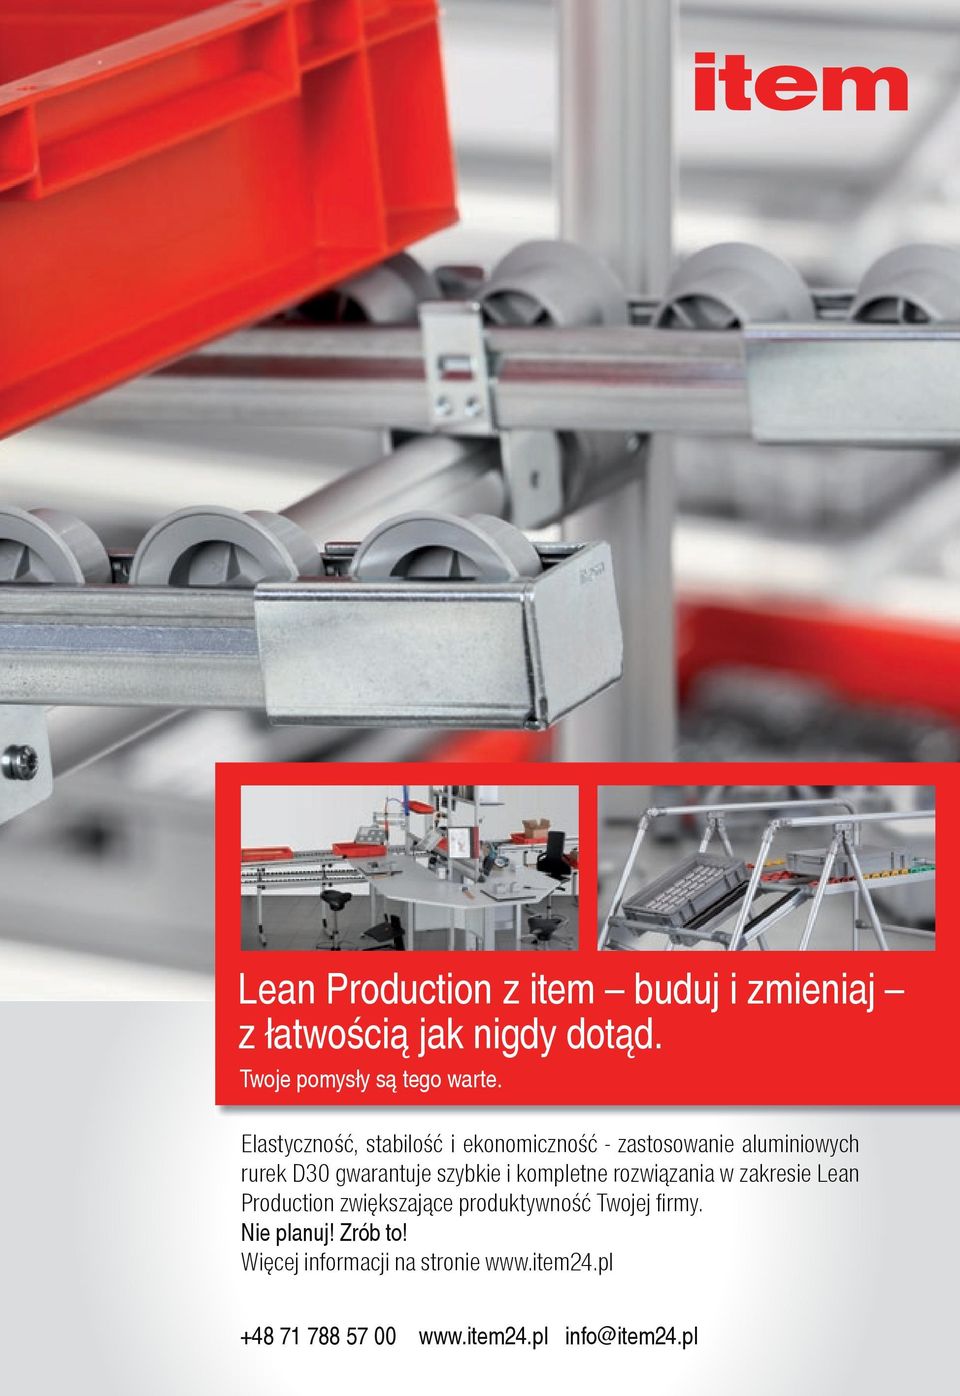 kompletne rozwiązania w zakresie Lean Production zwiększające produktywność Twojej firmy.